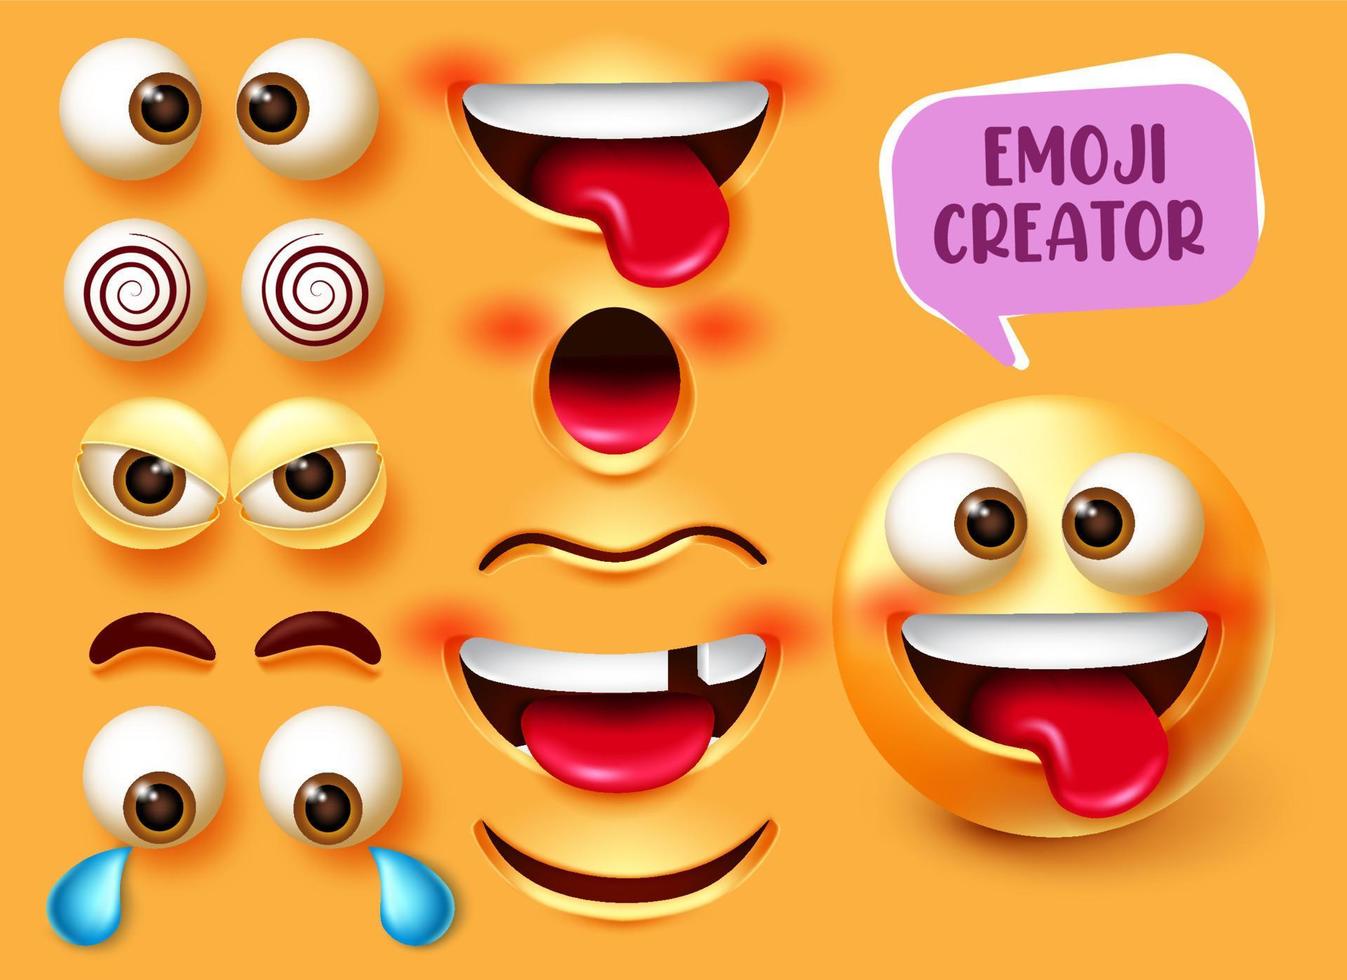 cenografia do vetor do criador do emoji. emoticon 3d character kit com elementos editáveis de rosto engraçado, irritado e triste, como olhos e boca para design de criação de expressão facial de emojis. ilustração vetorial